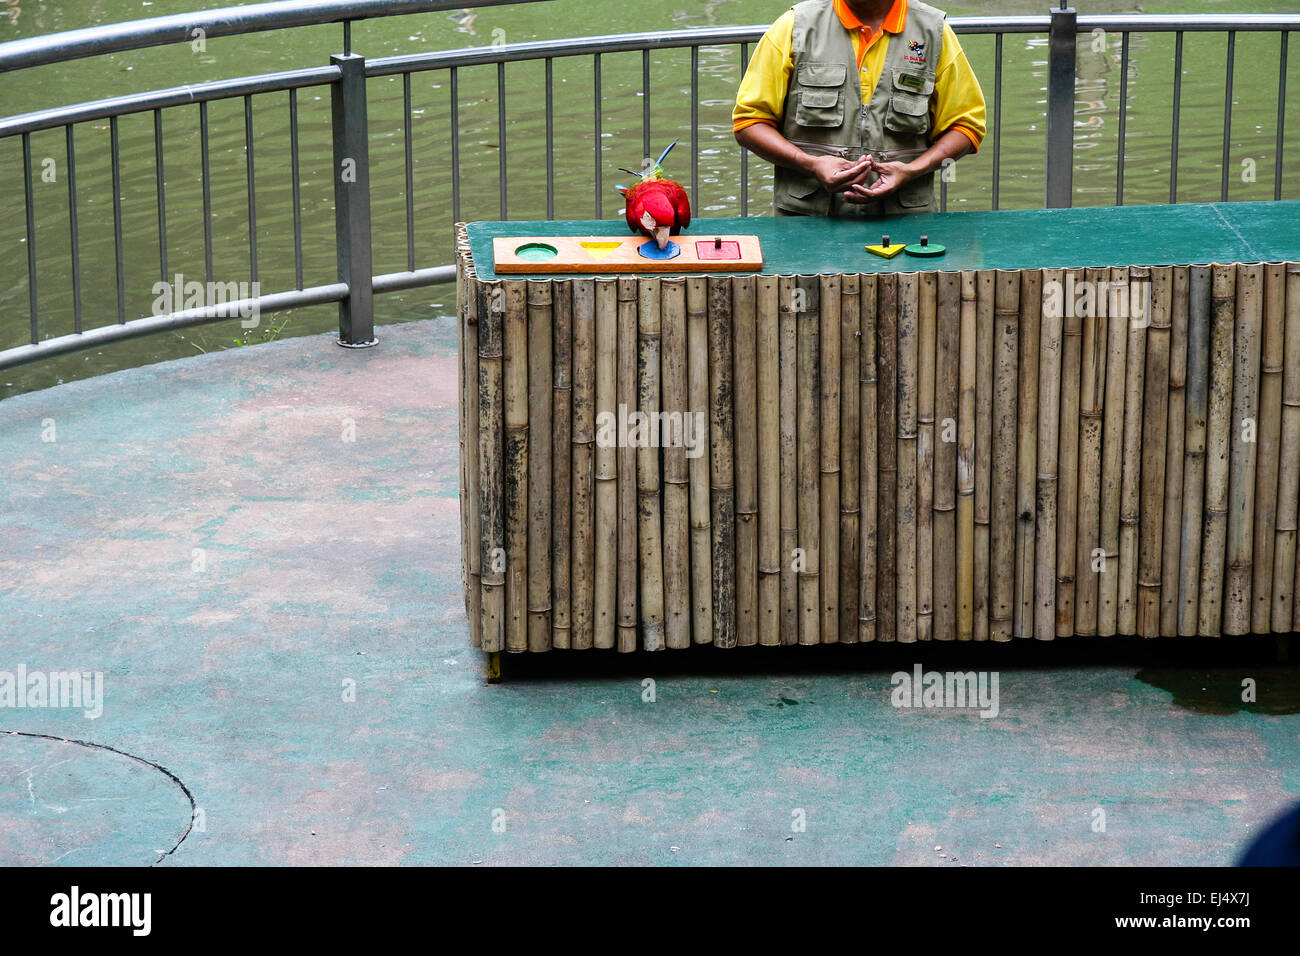 Le parc d'oiseaux de Kuala Lumpur, Kuala Lumpur, Malaisie. Parrot le tri des formes et des couleurs au cours de spectacle d'oiseaux formés. Banque D'Images